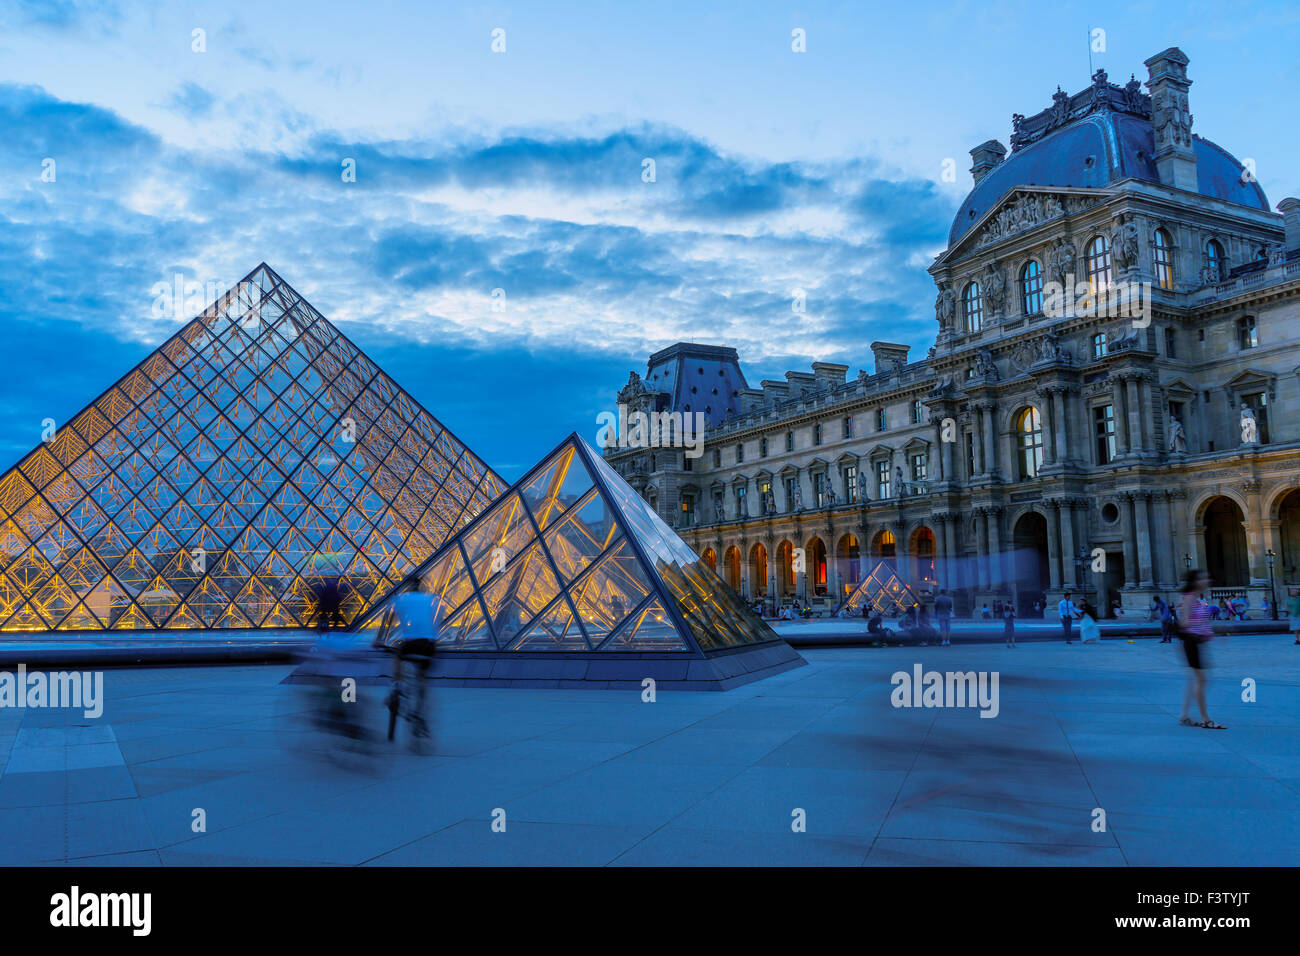 Les cyclistes et les voyageurs aller sur la cour du Louvre Museum. Paris, France. Août, 2015. Banque D'Images